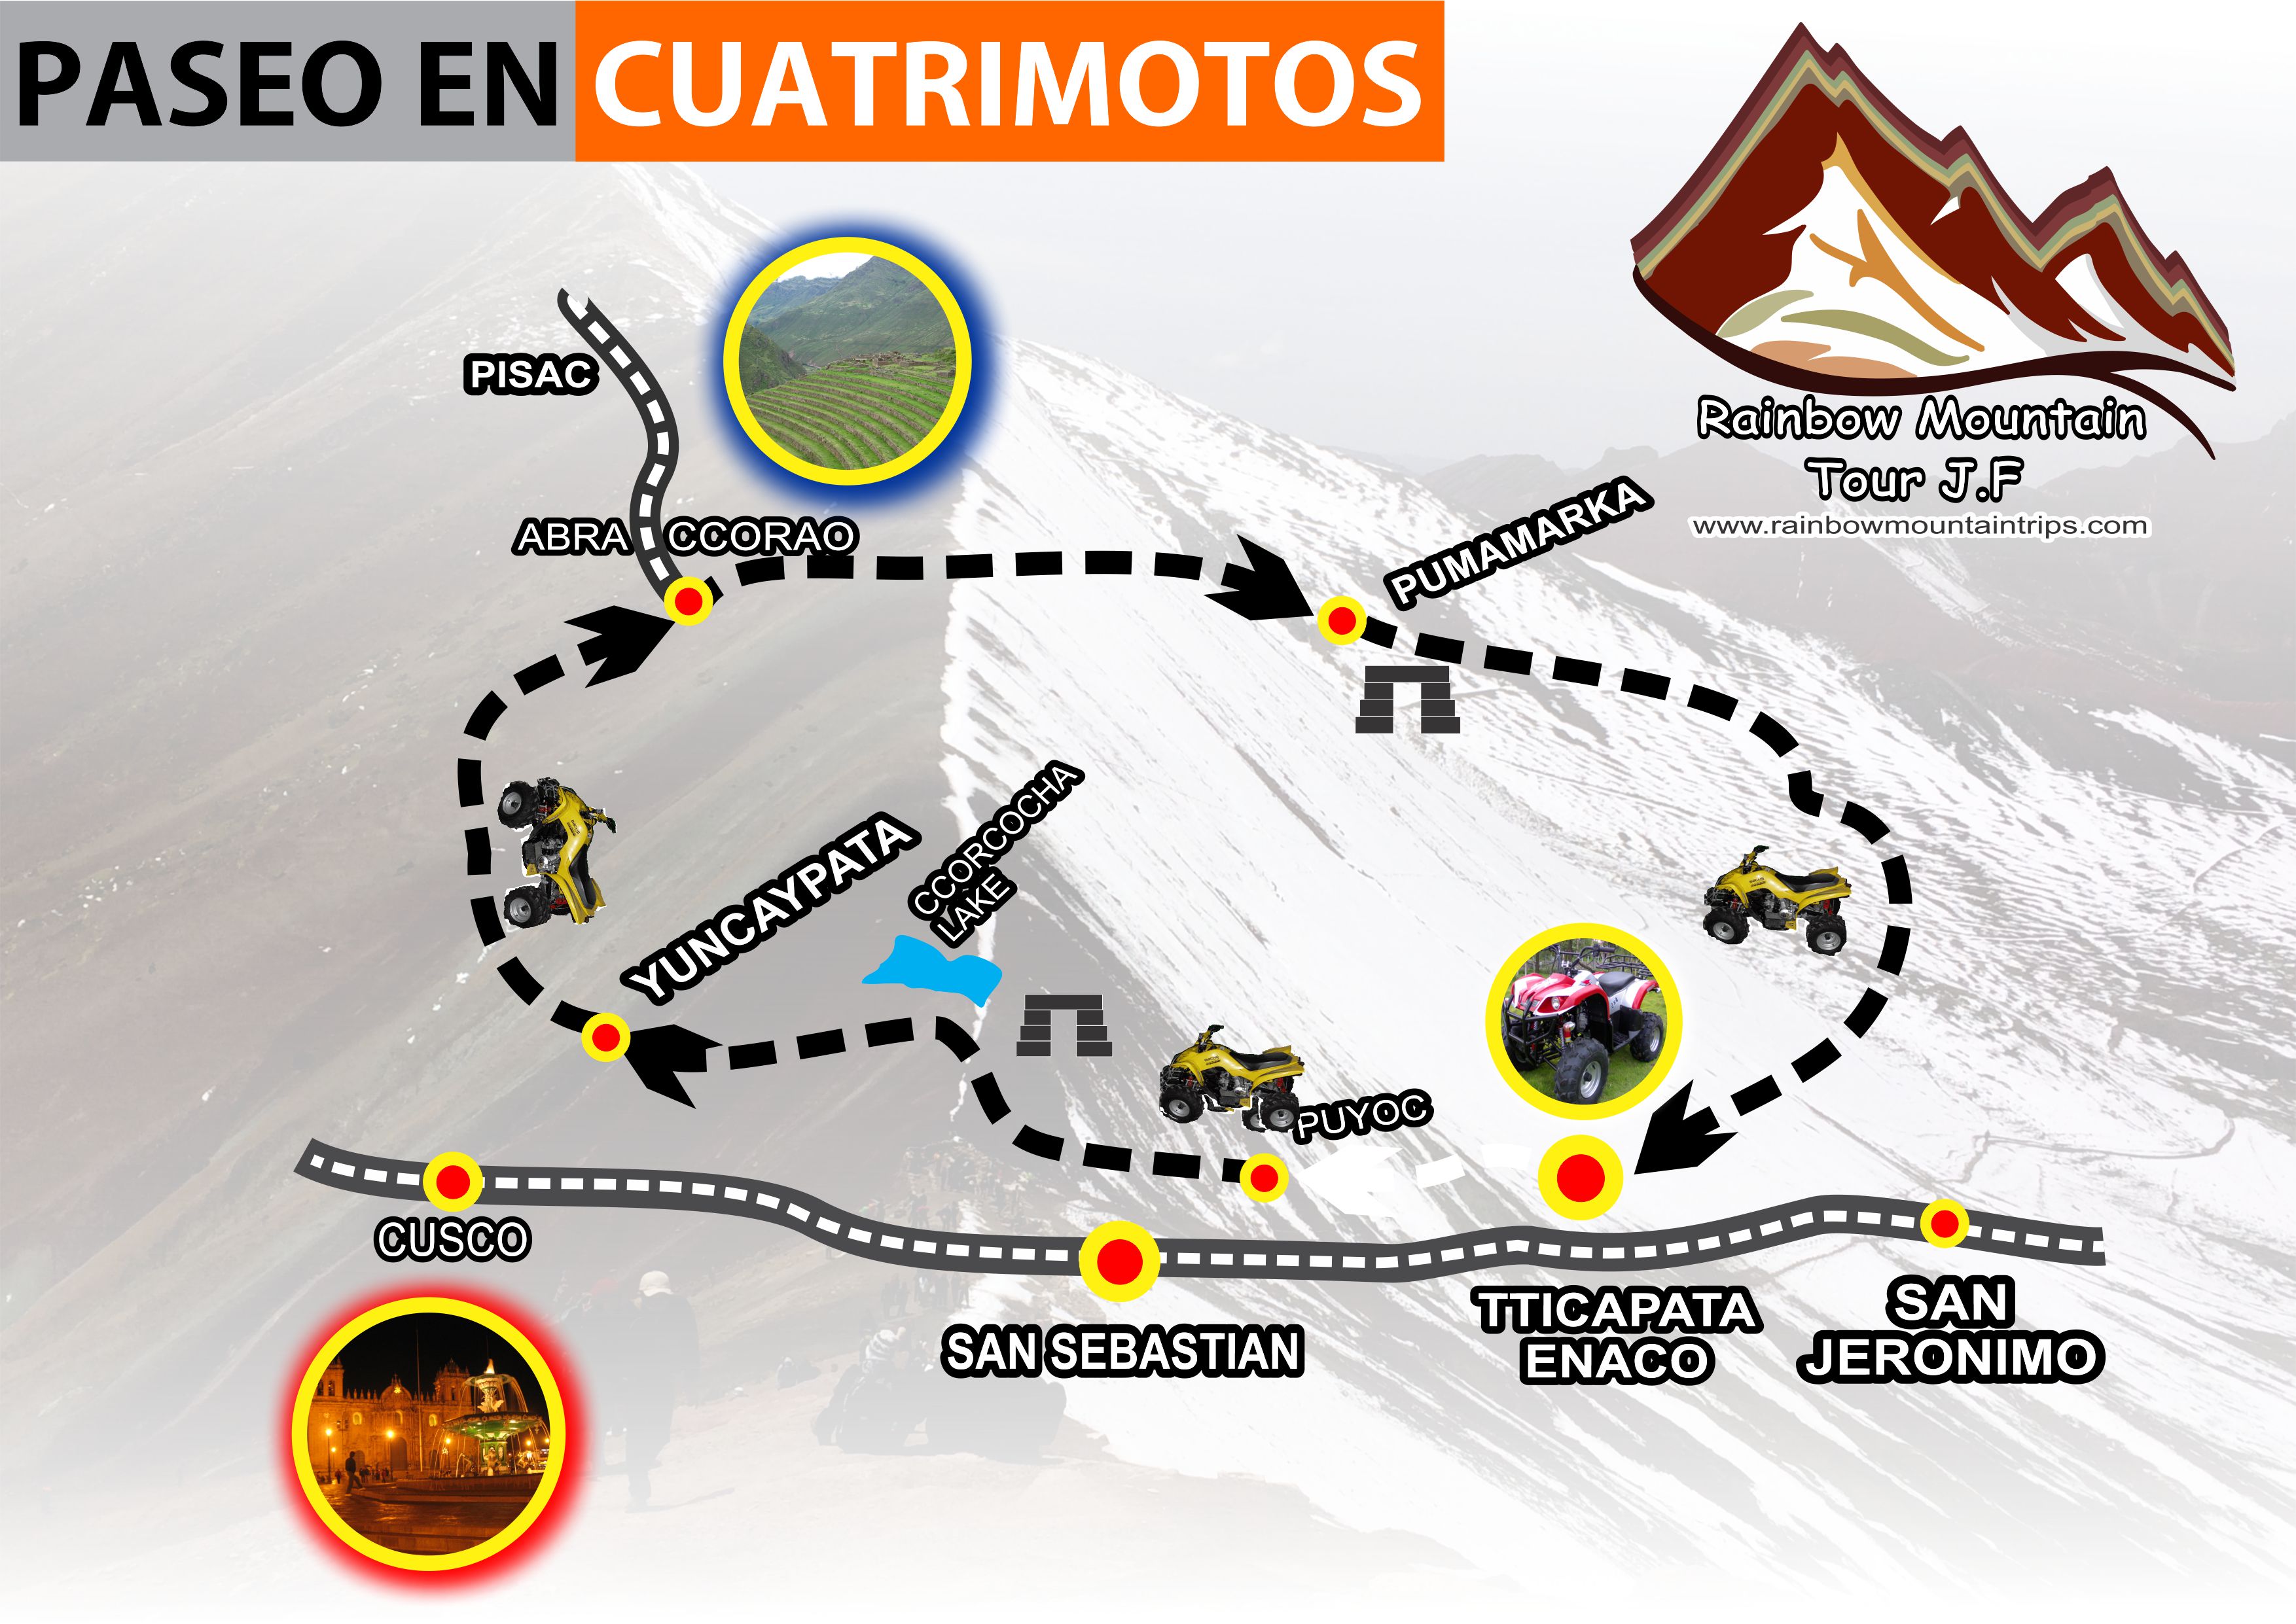 Mapa del paseo en cuatrimotos en cusco